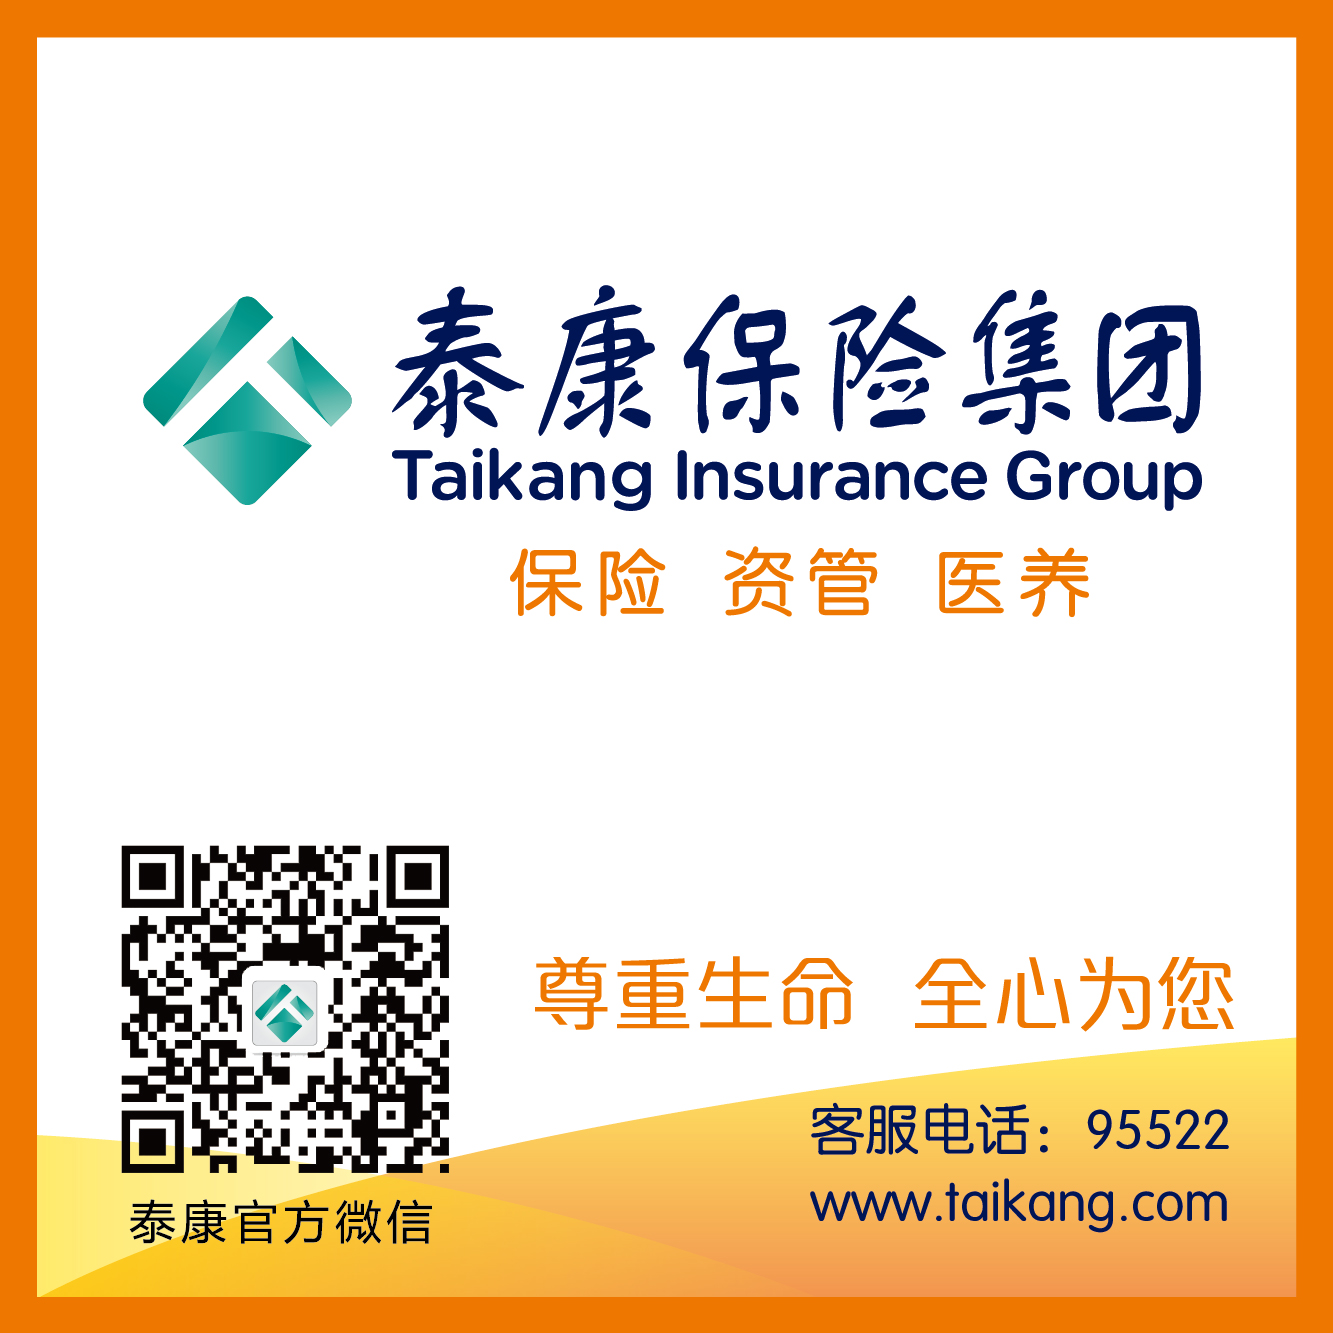 泰康保险集团与北京市昌平区人民政府签署战略合作协议